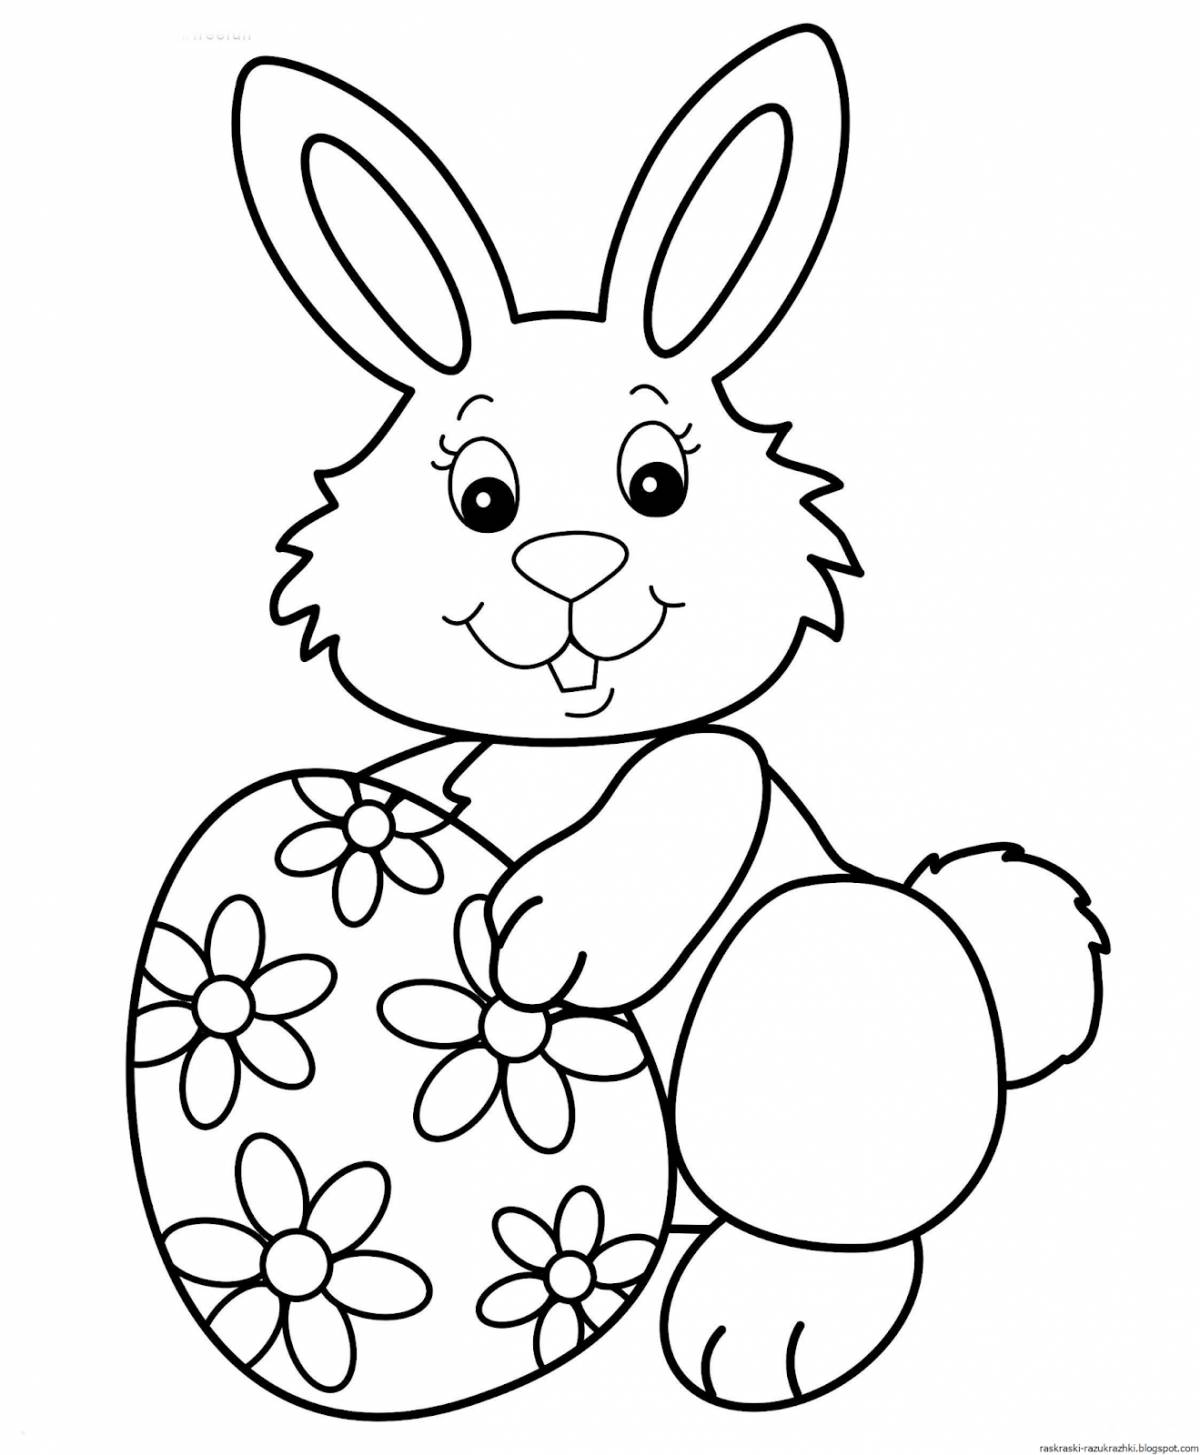 Увлекательная раскраска зайца для детей 3-4 лет